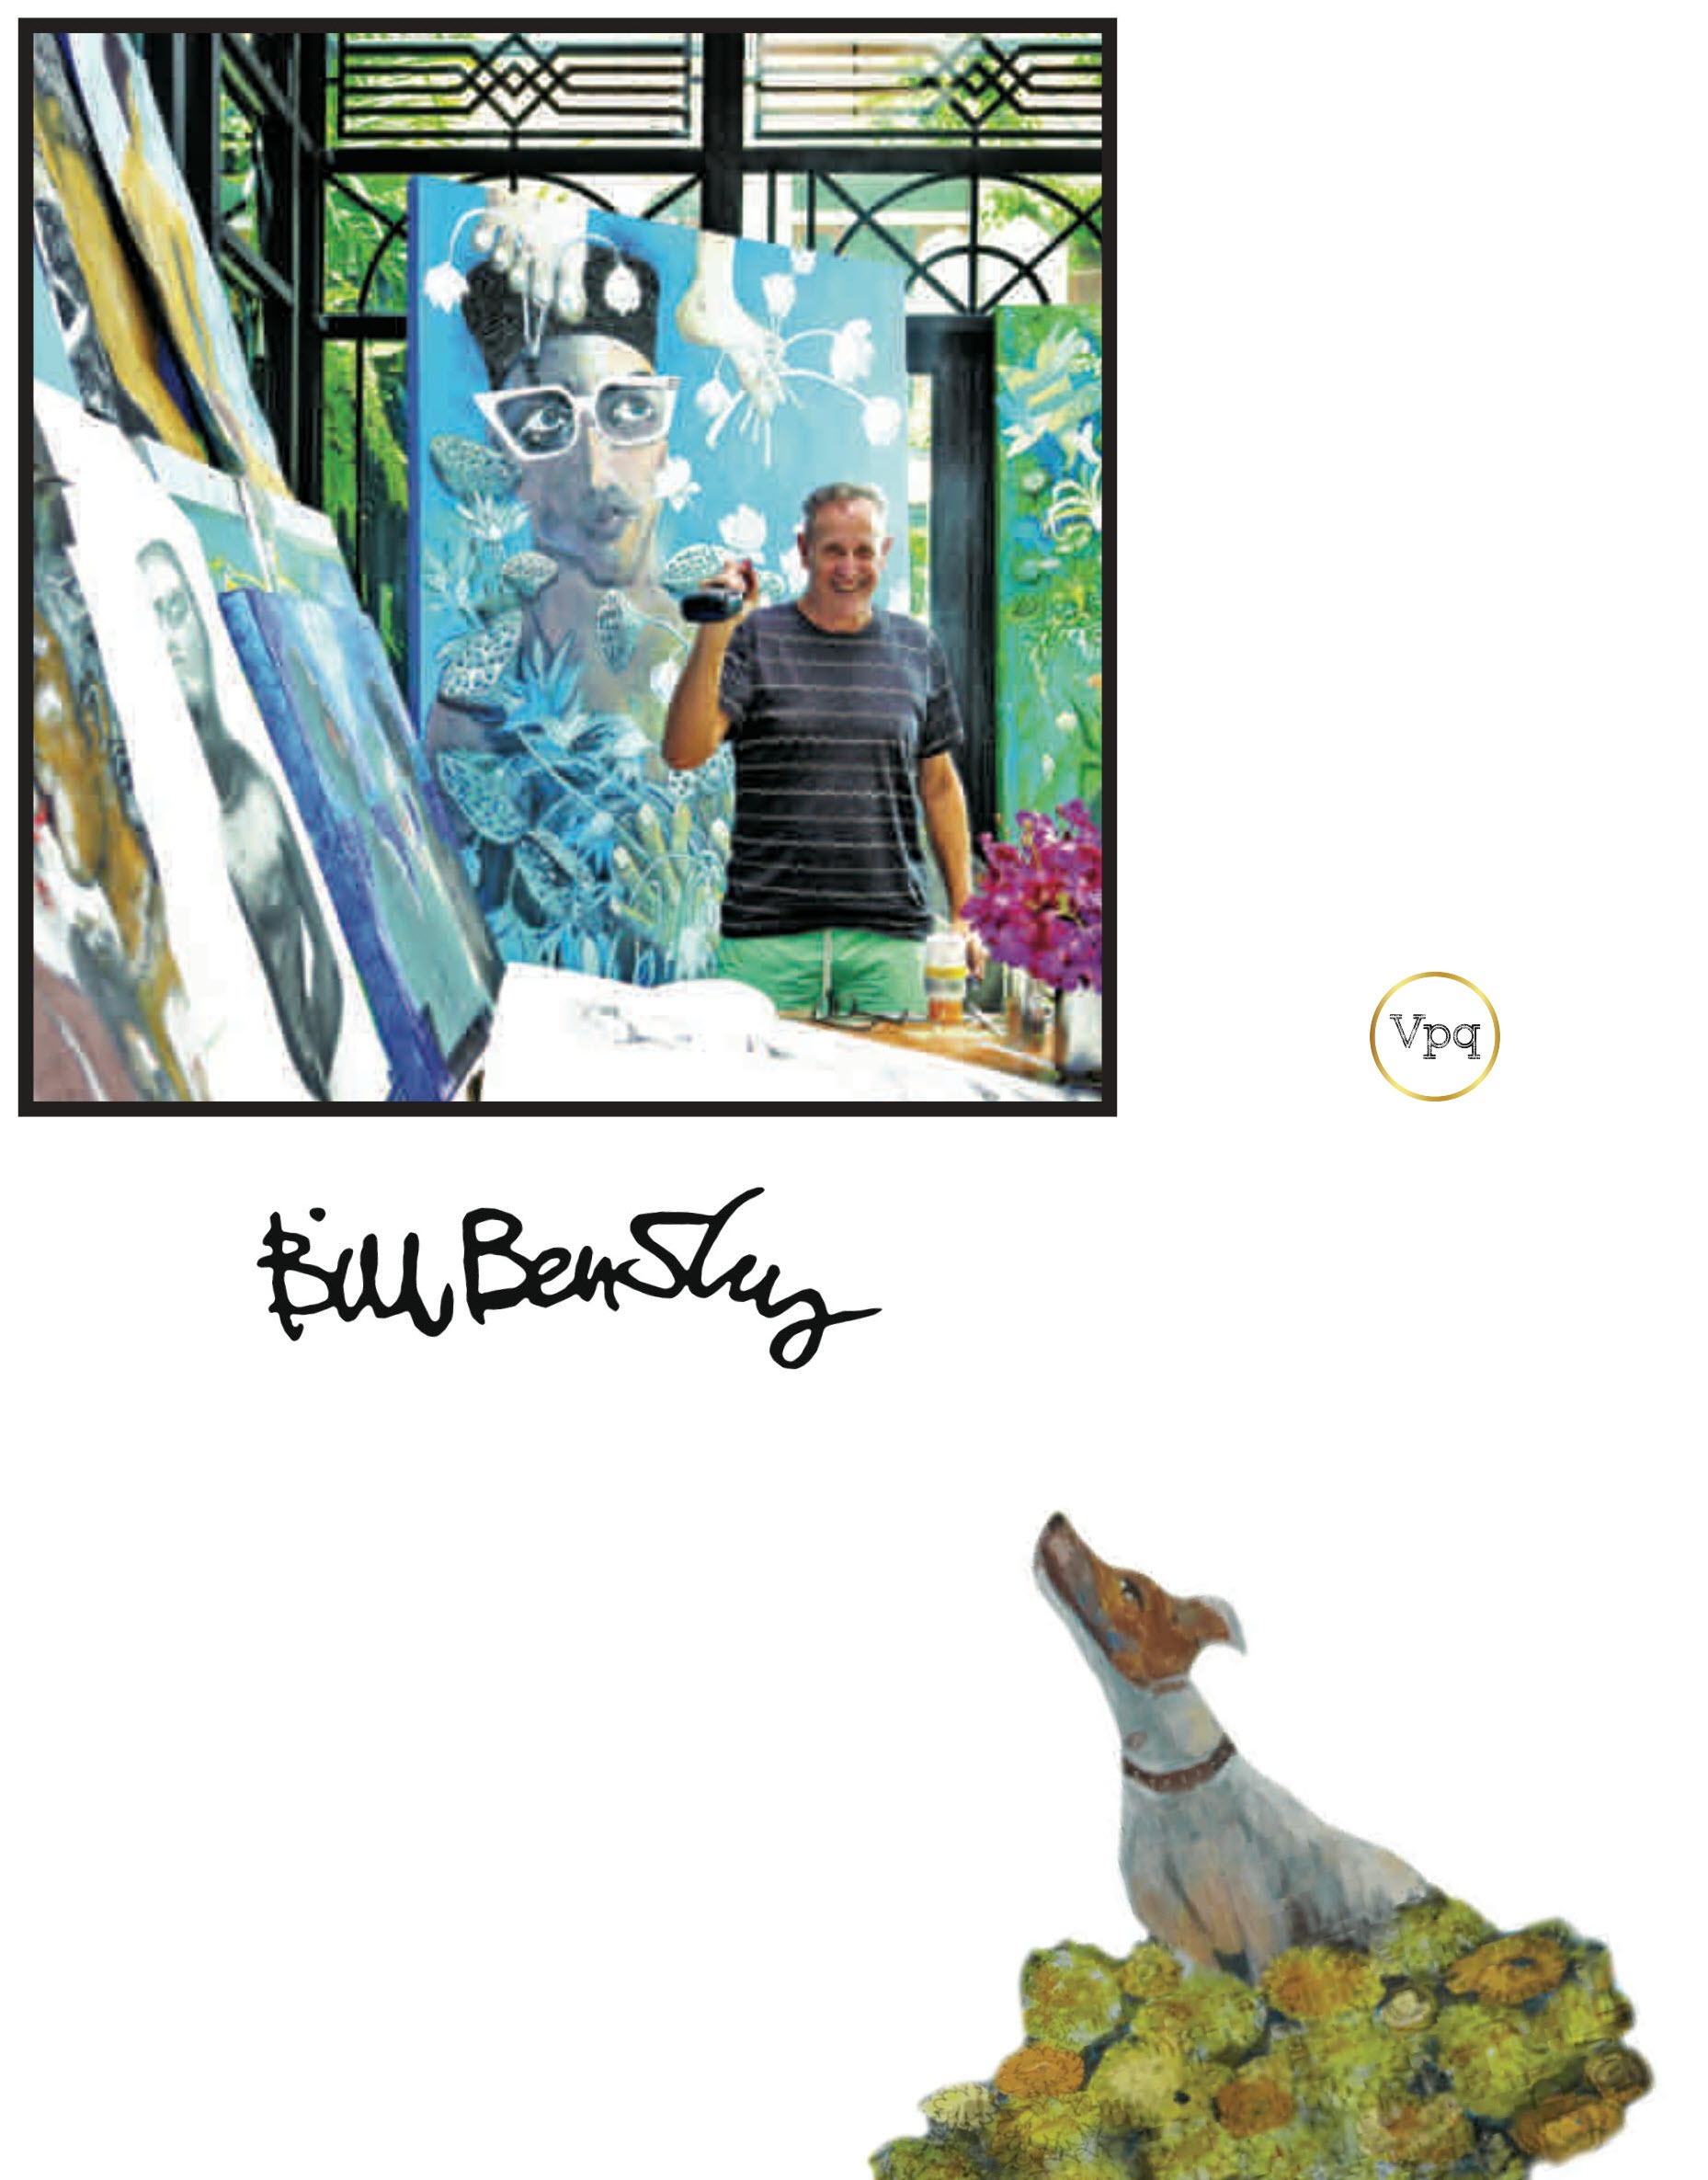 Bức tranh Bill Bensley và chú chó của ông